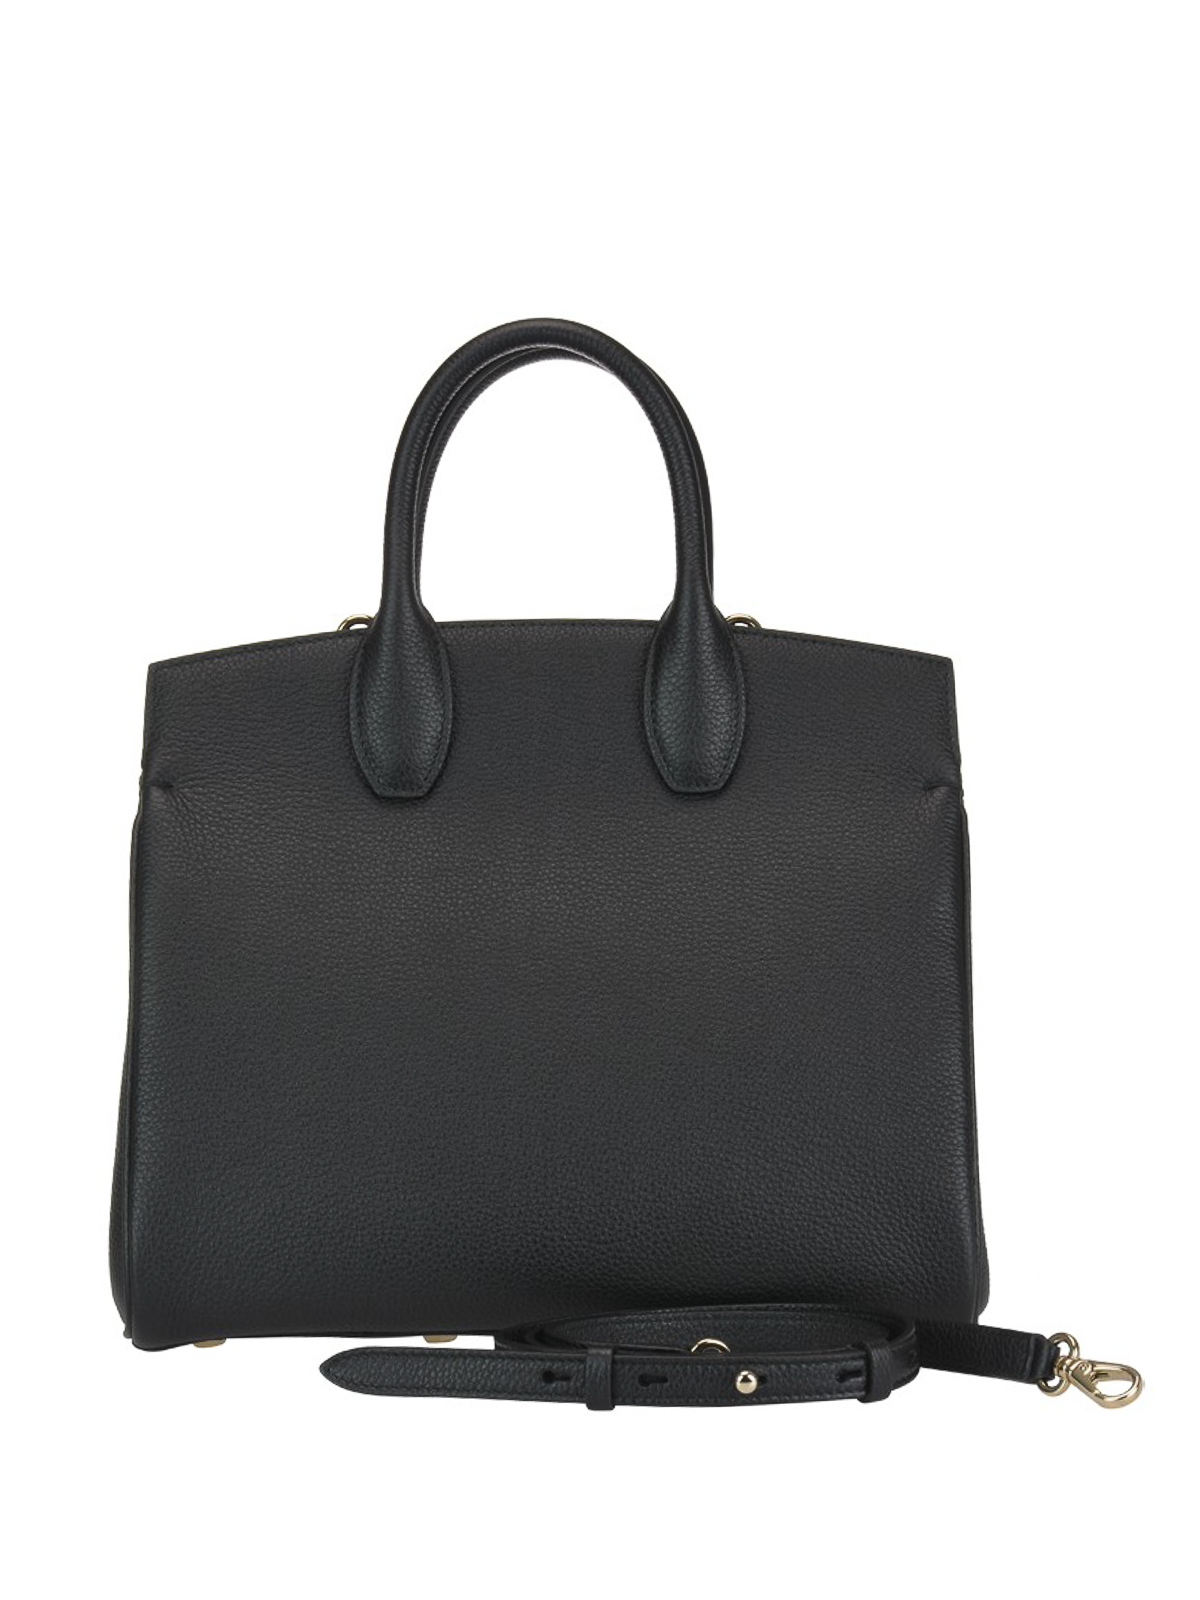 Bowling bags Salvatore Ferragamo - The Studio medium leather bag - 718293